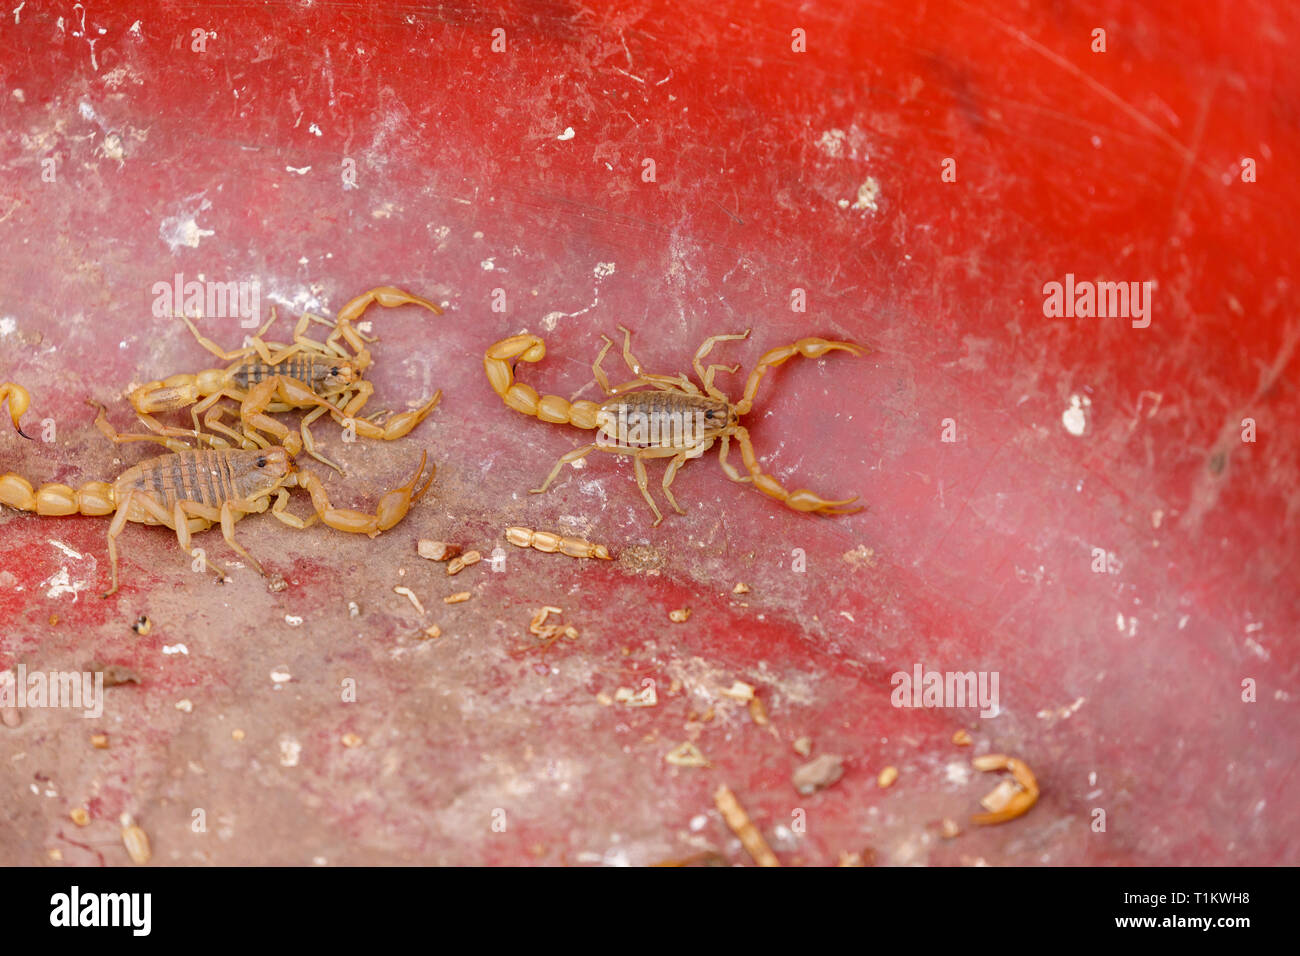 KASHGAR, XINJIANG / Cina - Ottobre 1, 2017: Tre scorpioni in una vasca di plastica - catturato in un mercato di Kashgar. Foto Stock